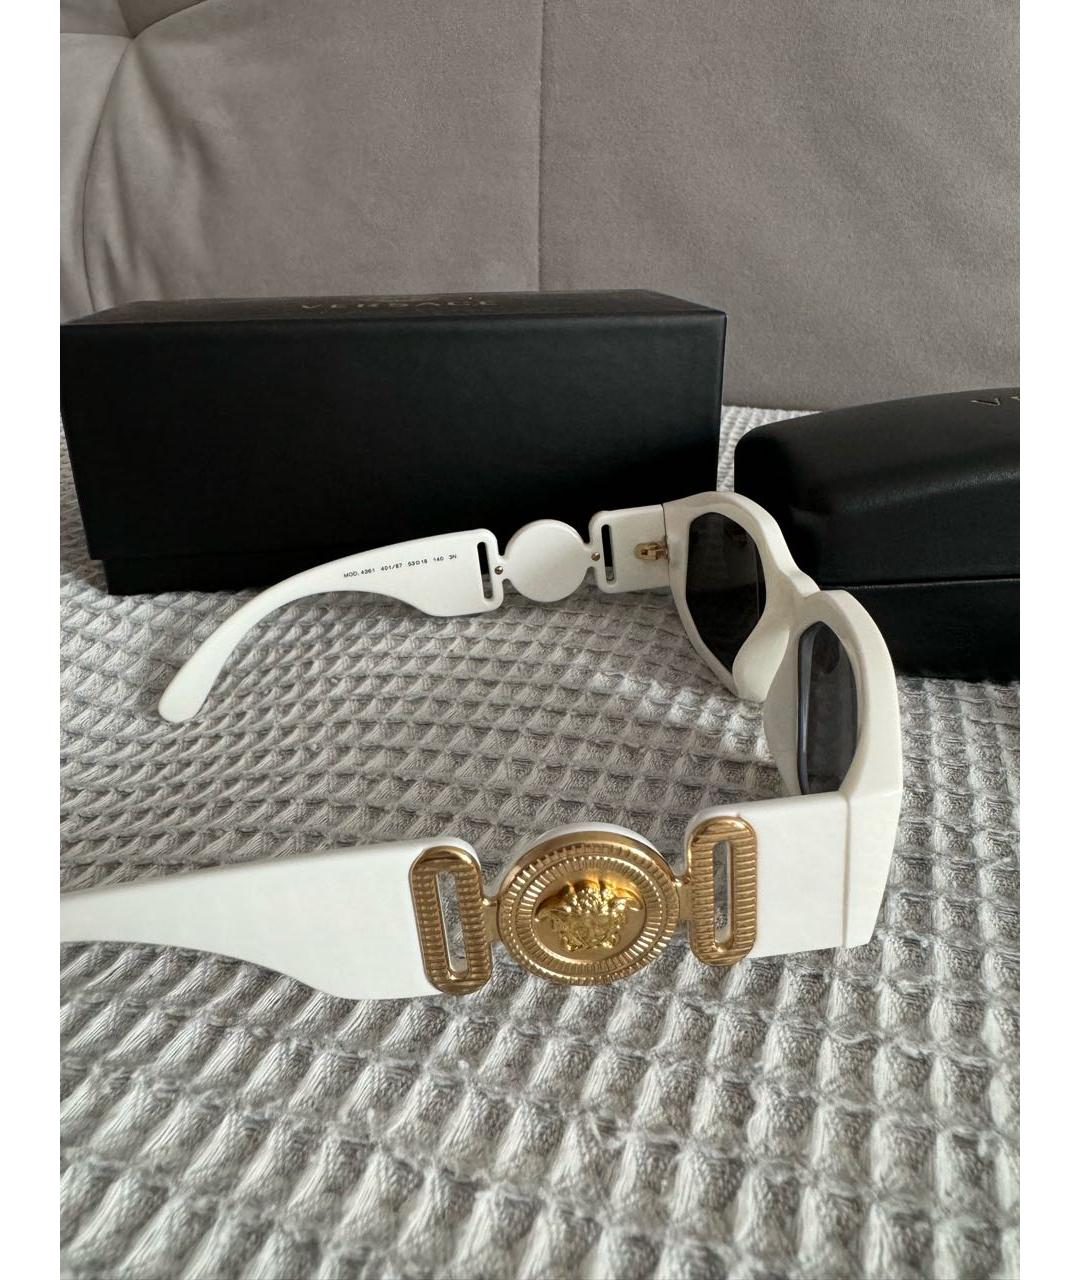 VERSACE Белые пластиковые солнцезащитные очки, фото 2